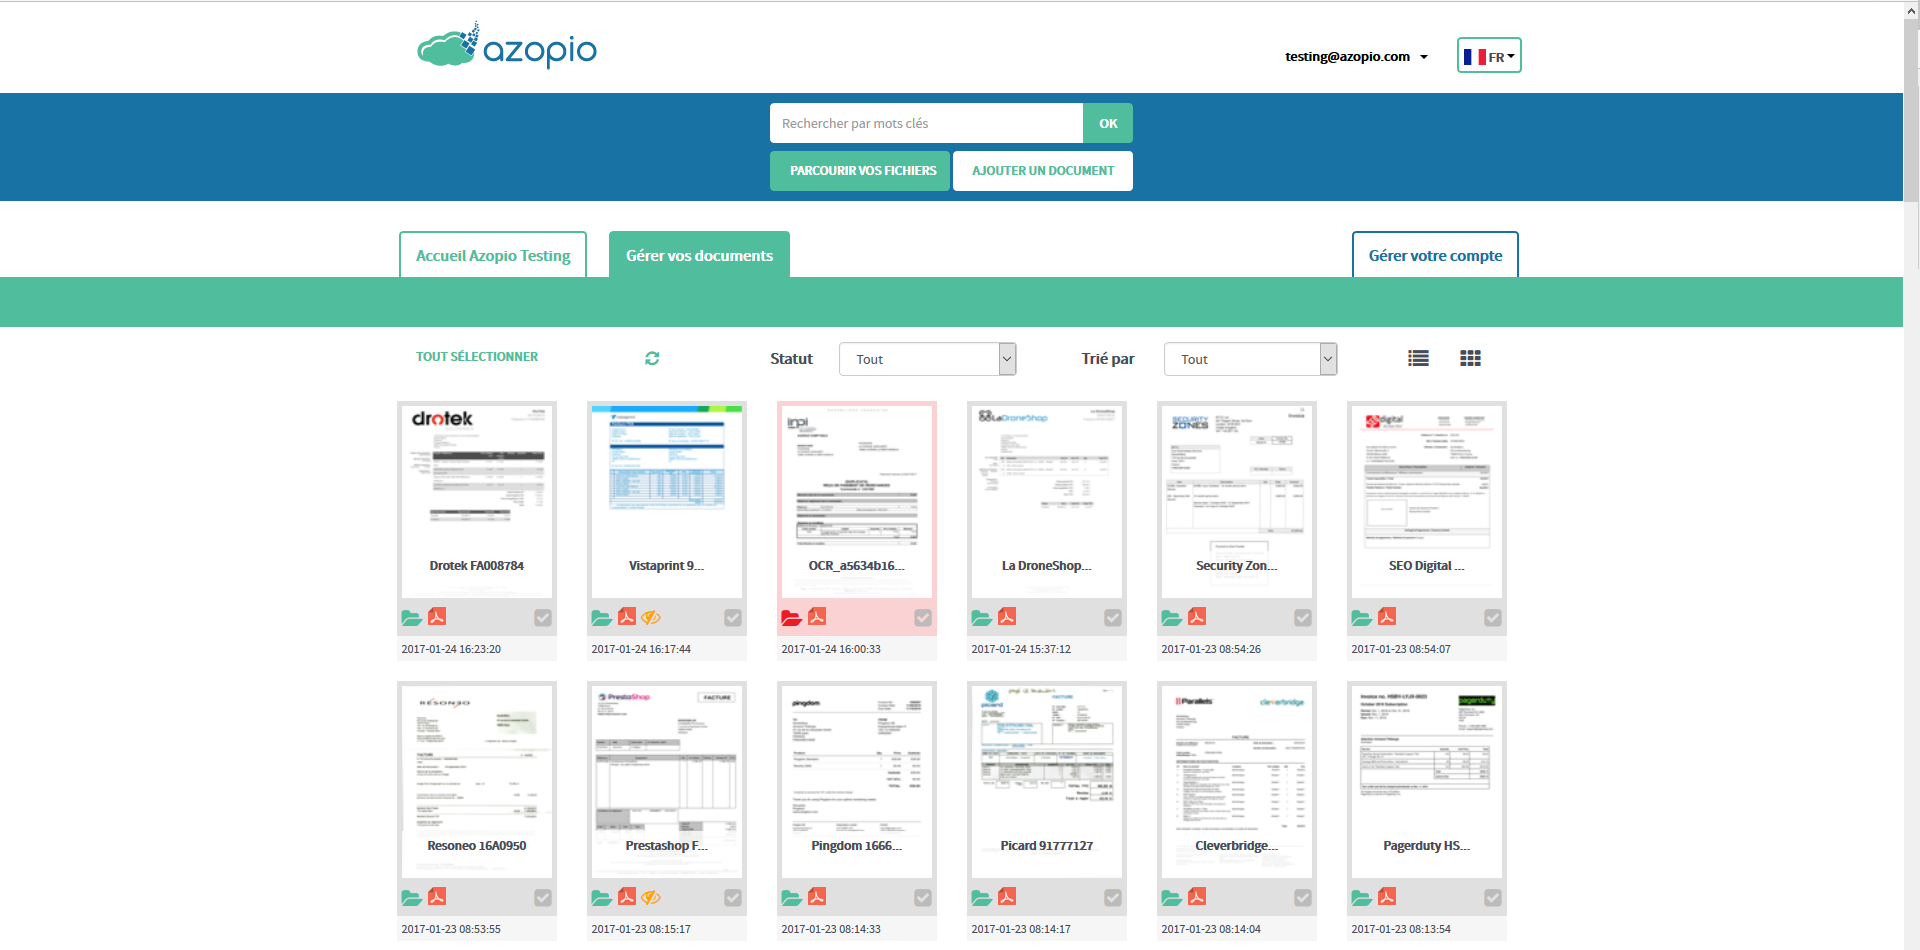 Azopio - L'utilisateur peut visionner en un clin d'oeil les documents téléchargés automatiquement sur l'interface intuitive d'Azopio. Il peut facilement connâitre leurs statuts et lancer des recherches spécifiques